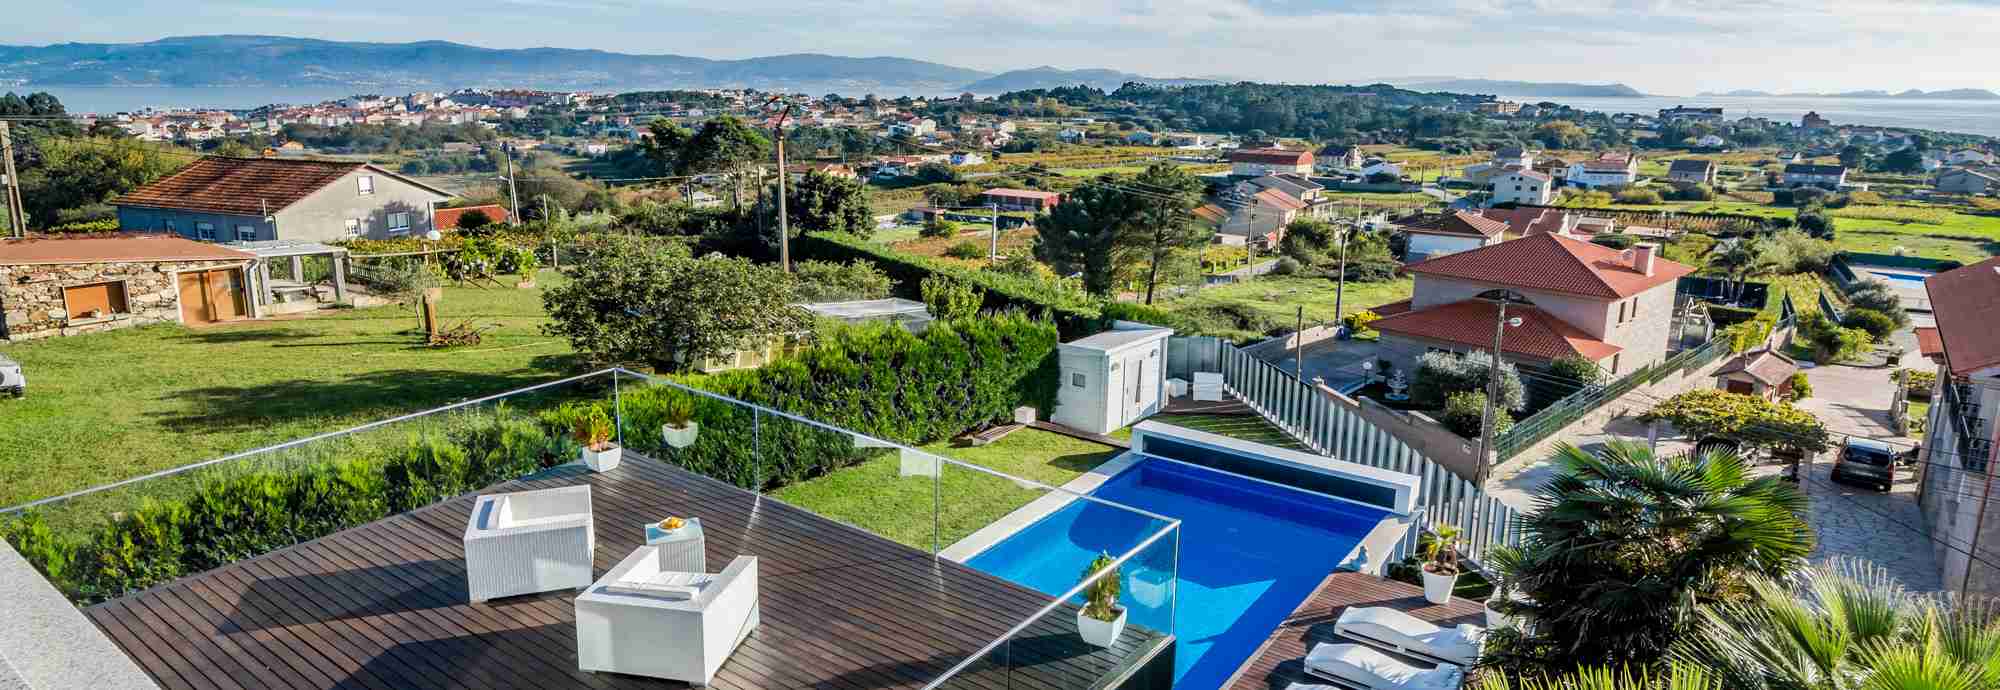 Villa de lujo en el océano a poca distancia de la playa y el corazón gastronómico de Galicia